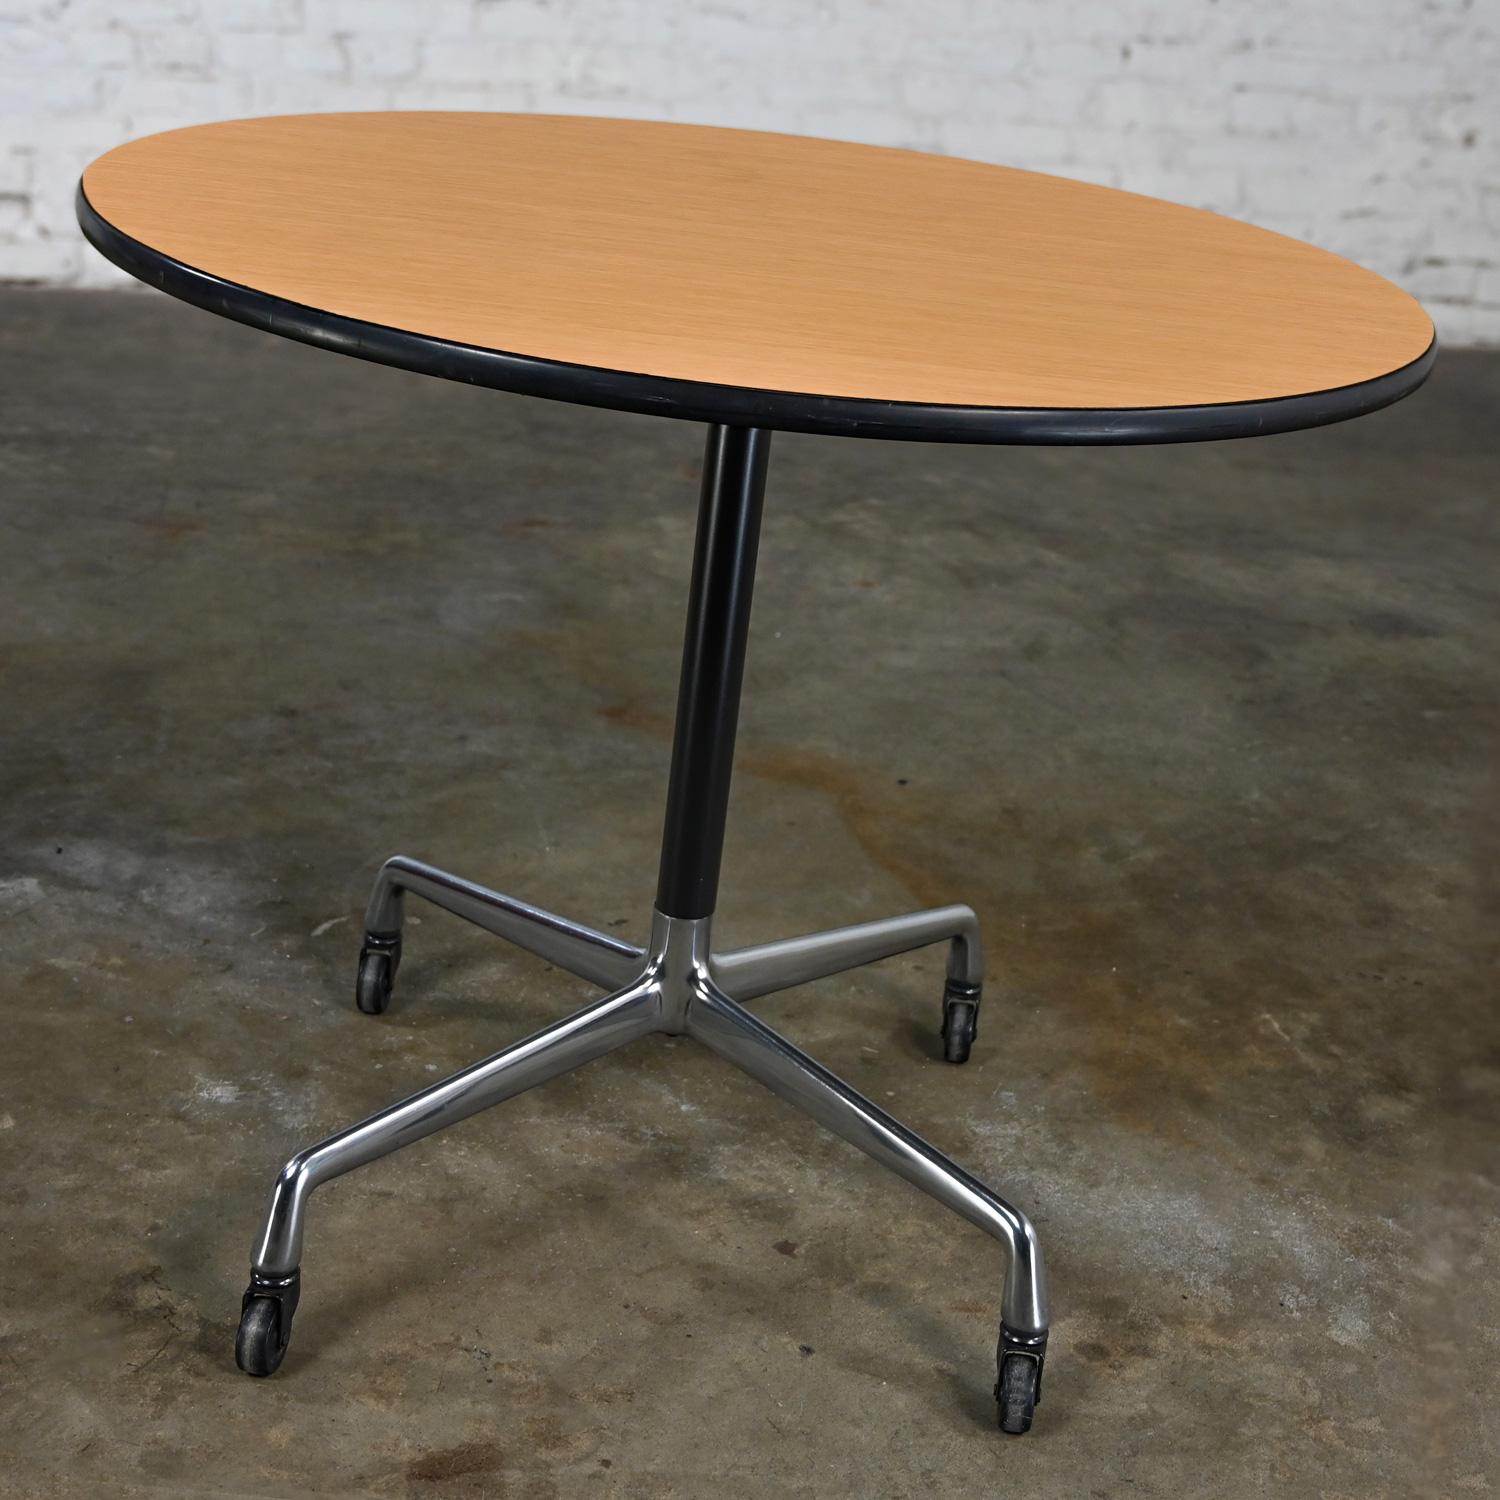 Magnifique table Eames pour Herman Miller de style moderne du milieu du siècle avec base universelle en aluminium à 4 branches avec roulettes noires, tige noire, attache araignée en aluminium, et un plateau rond de 36